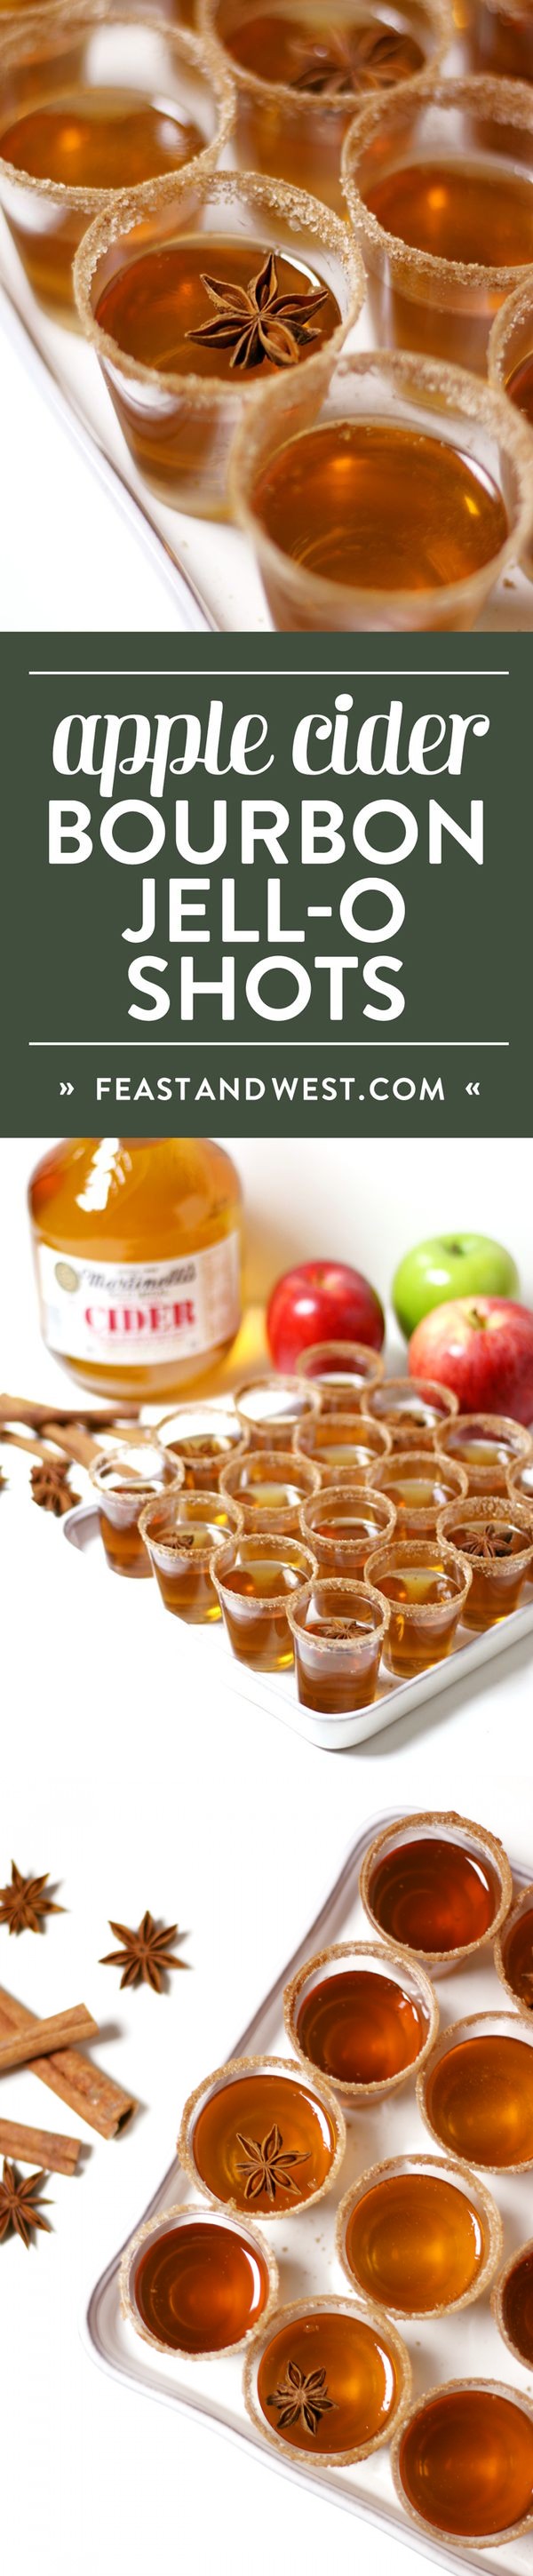 Gourmet Apple Cider Bourbon Jell-O Shots